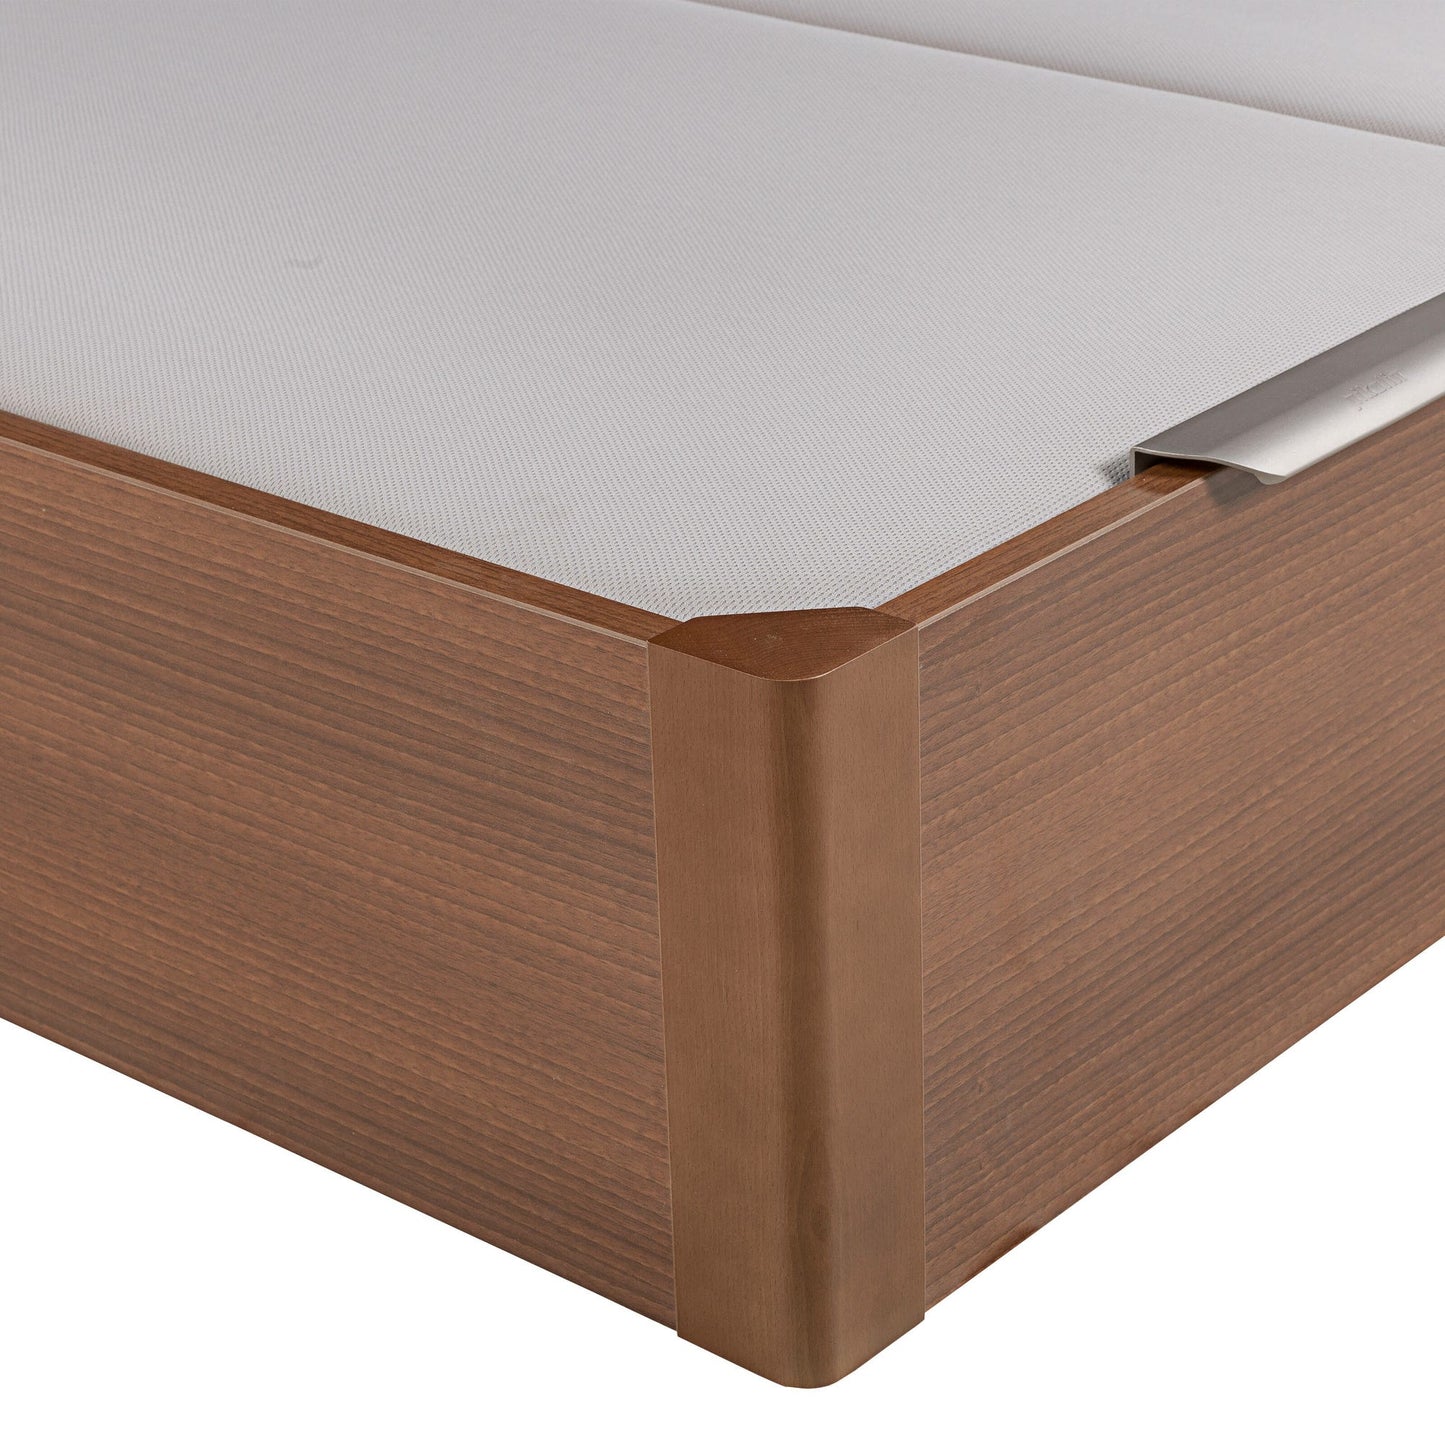 Canapé abatible de madera de tapa doble de color cerezo - DESIGN - 160x200